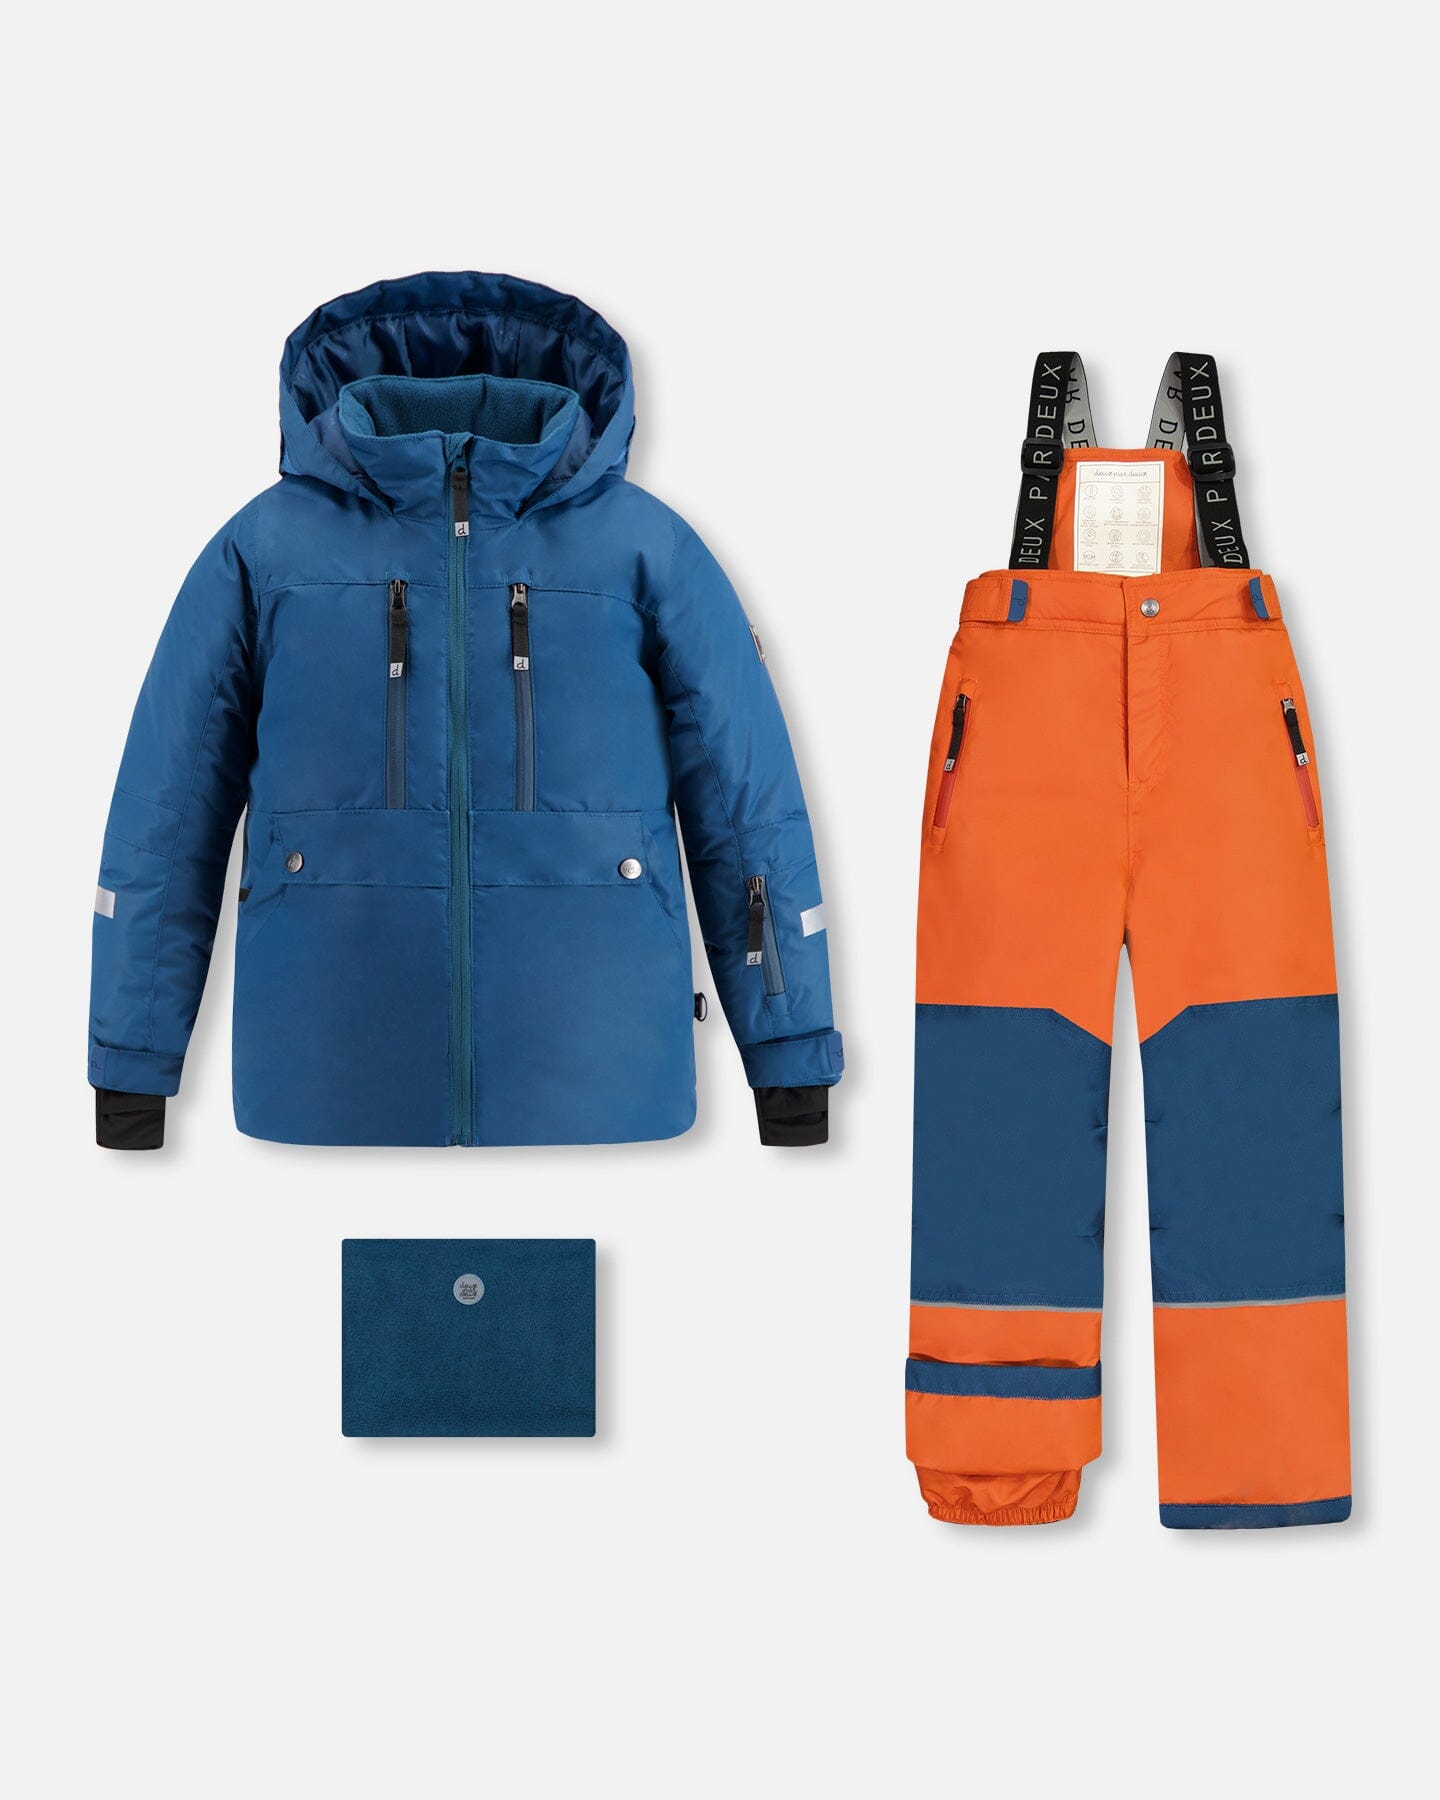 Teknik Two Piece Snowsuit Teal Blue And Fire Orange Snowsuits Deux par Deux 